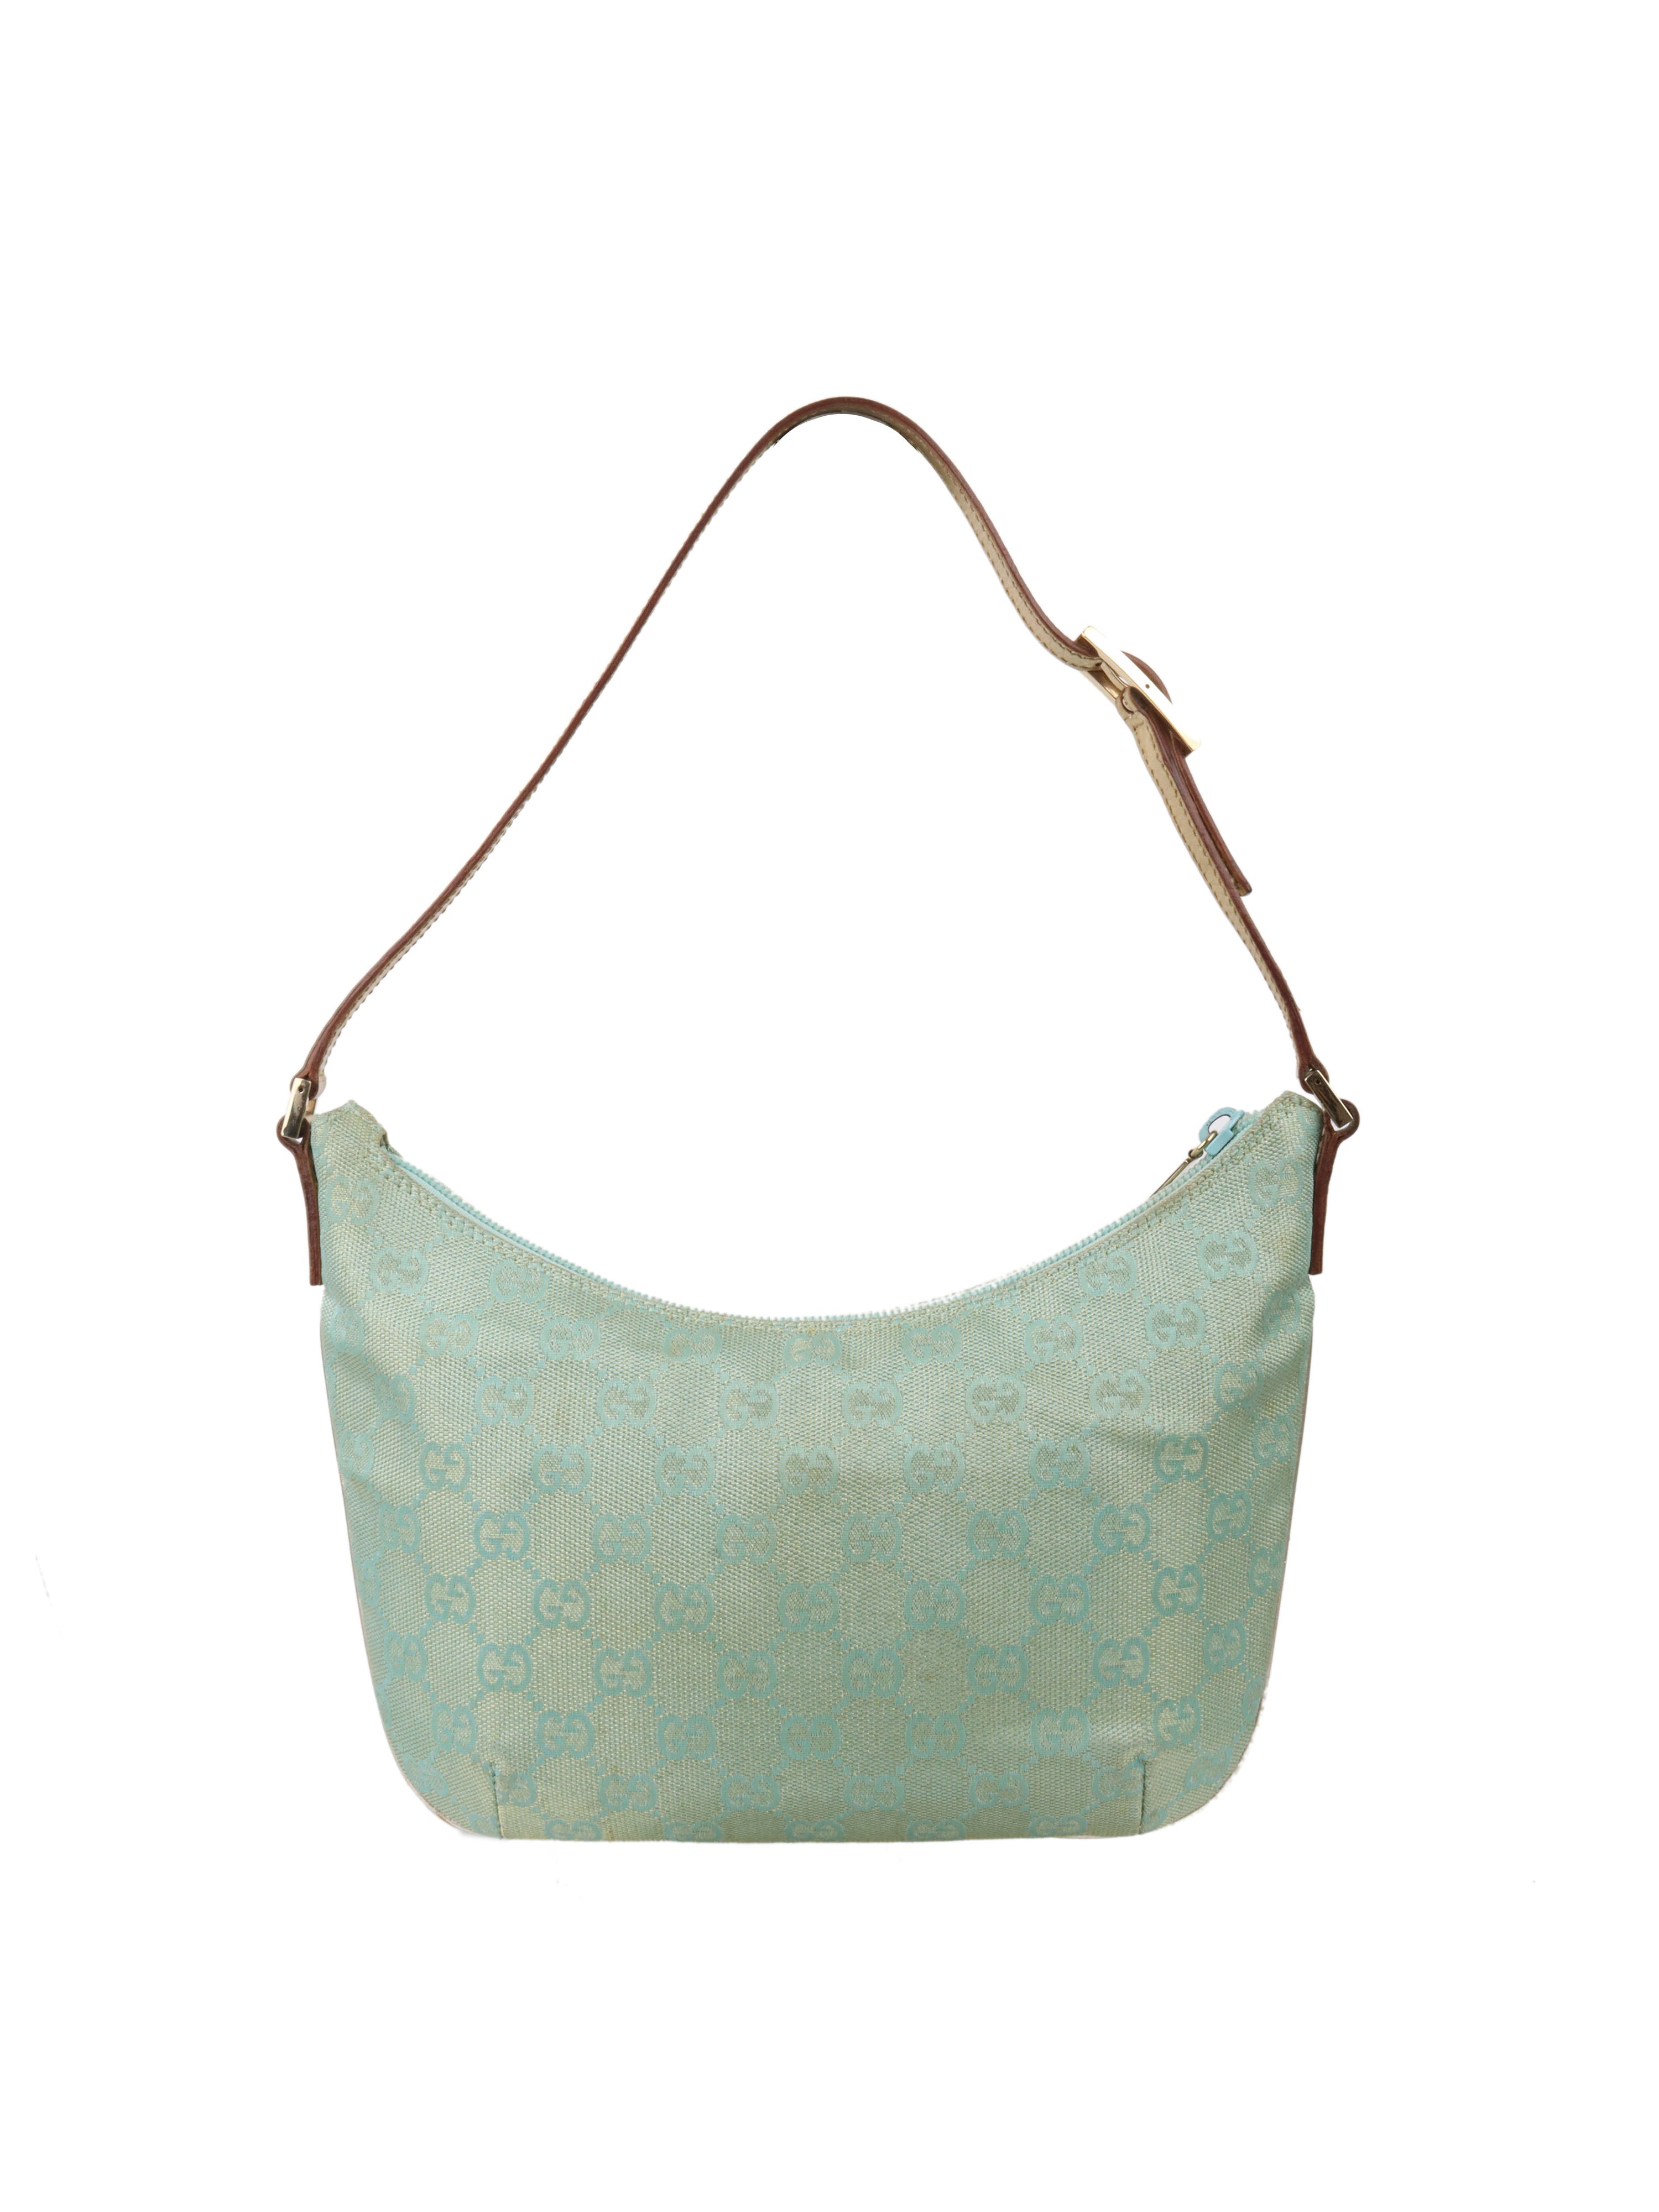 Gucci Vintage Turquoise Crescent Shoulder Bag.